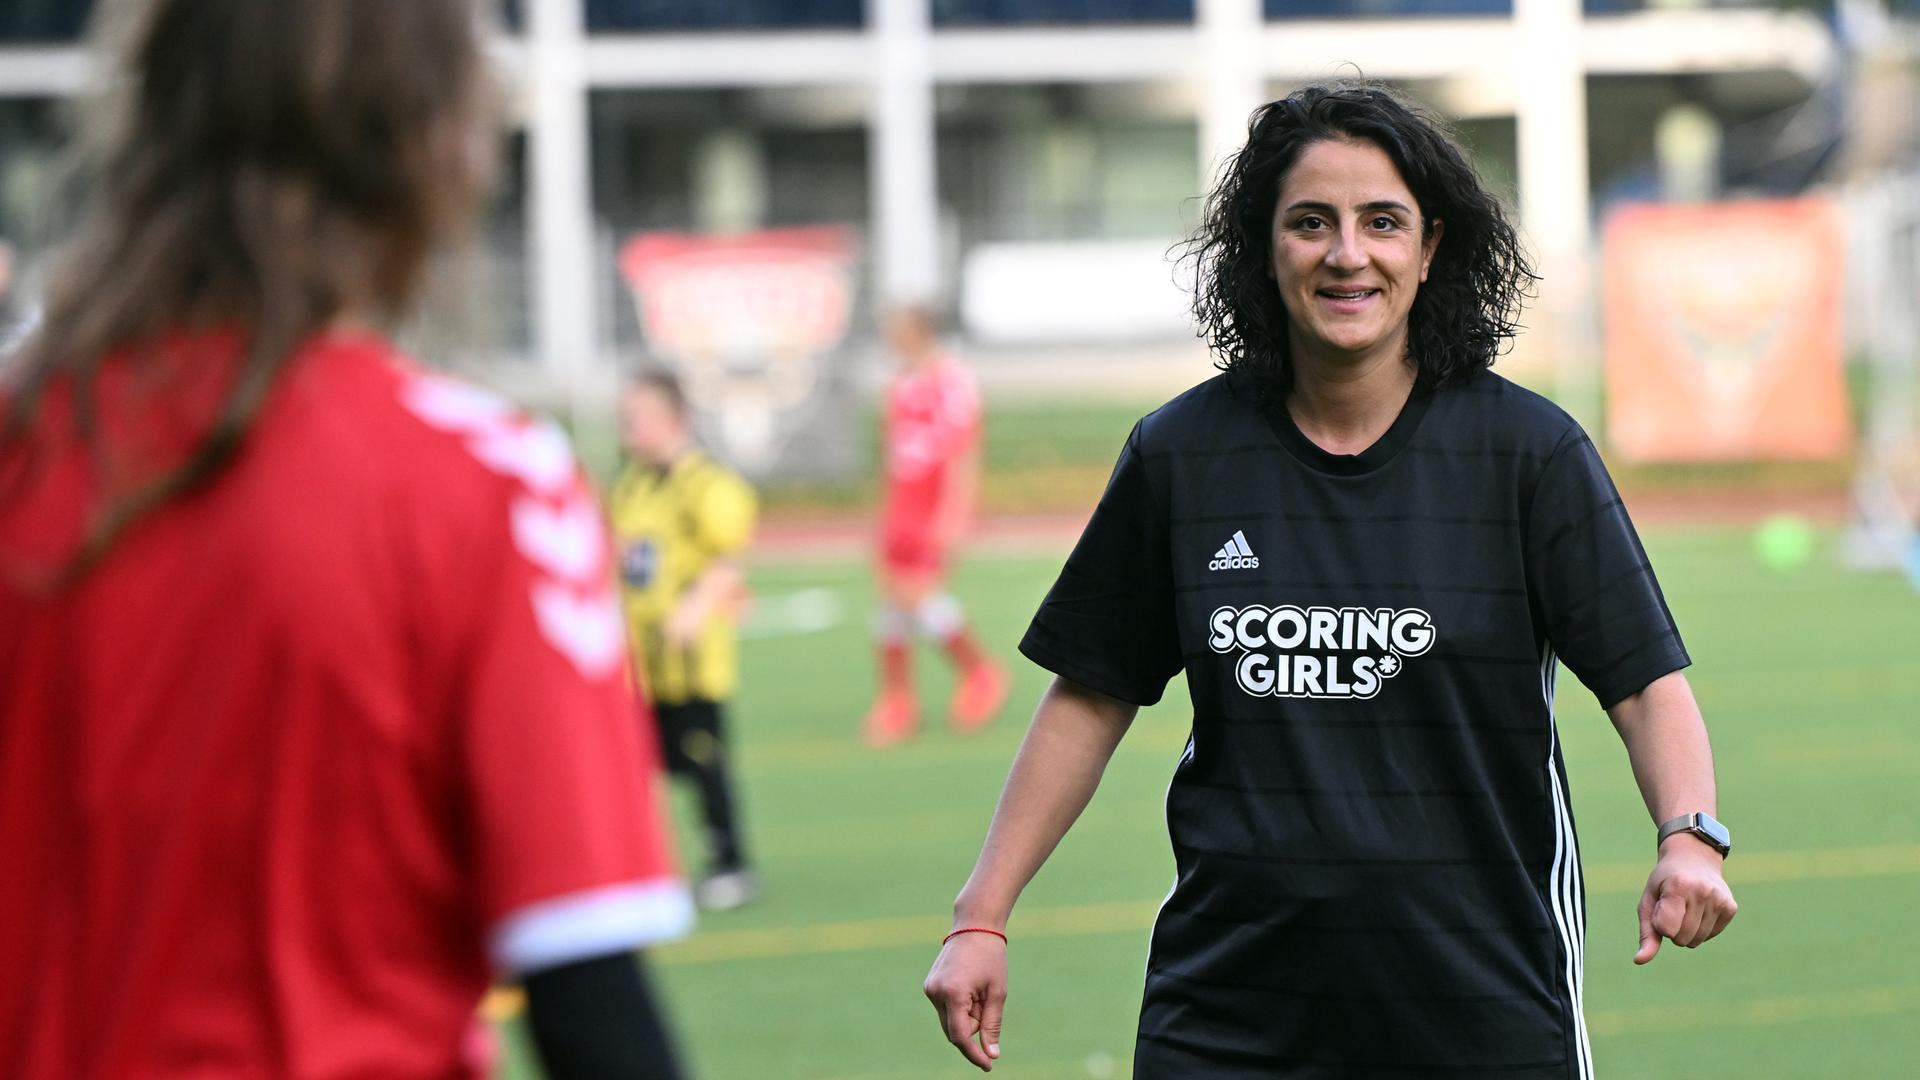 Tugba Tekkal steht mit "Scoring Girls" T-Shirt auf einem Sportplatz in Berlin und lächelt.